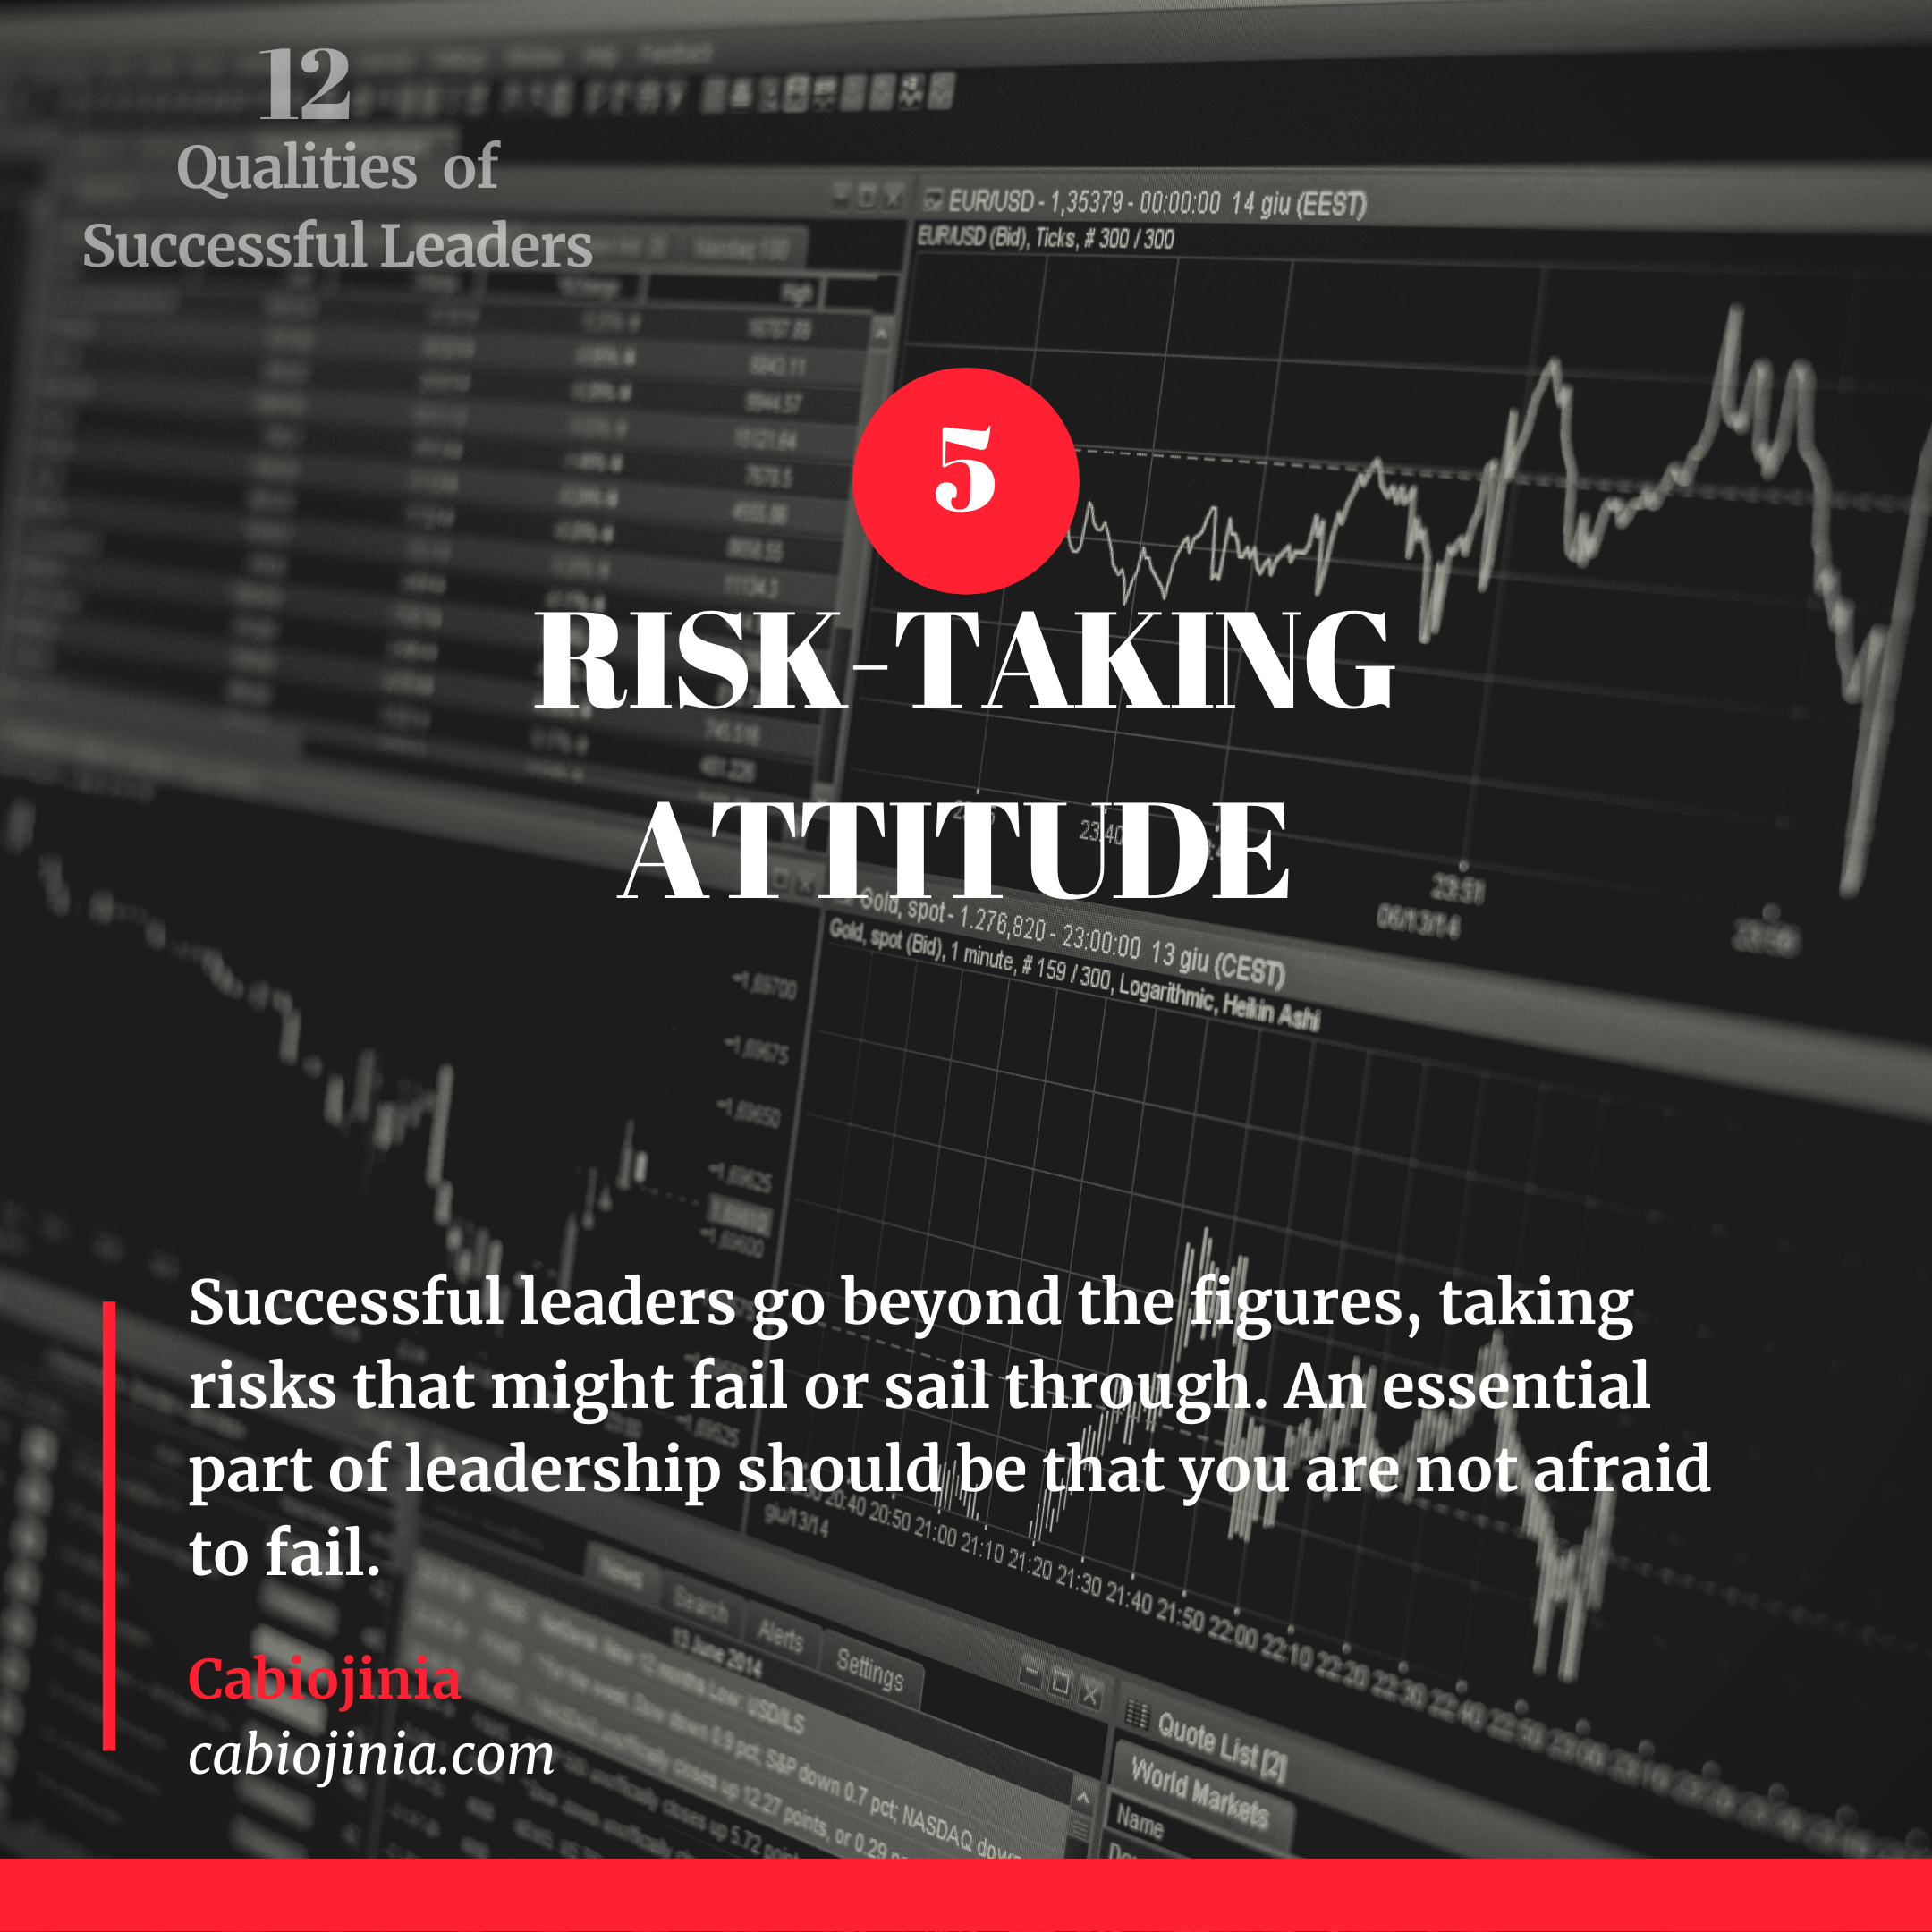 Risk-taking Attitude. Cabiojinia